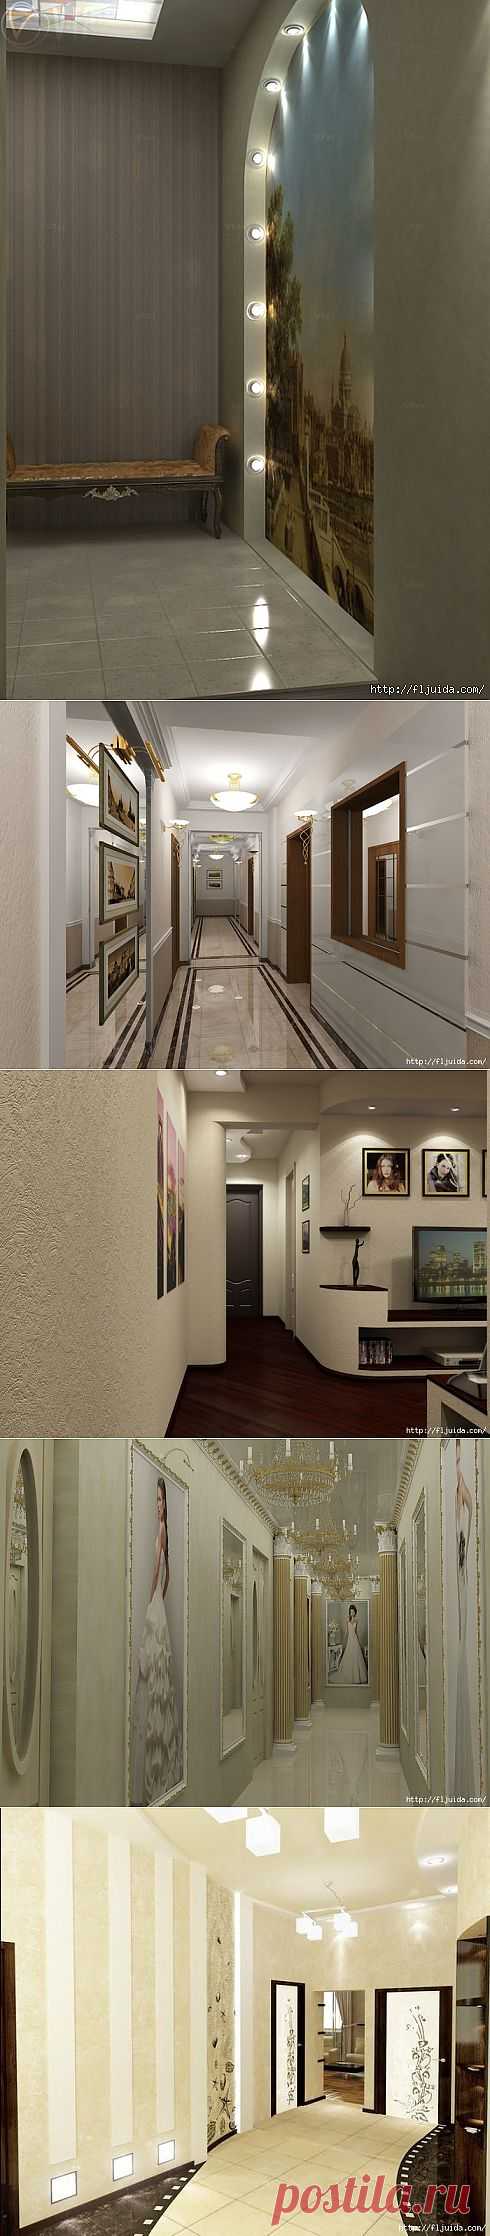 Красиво оформляем коридор..